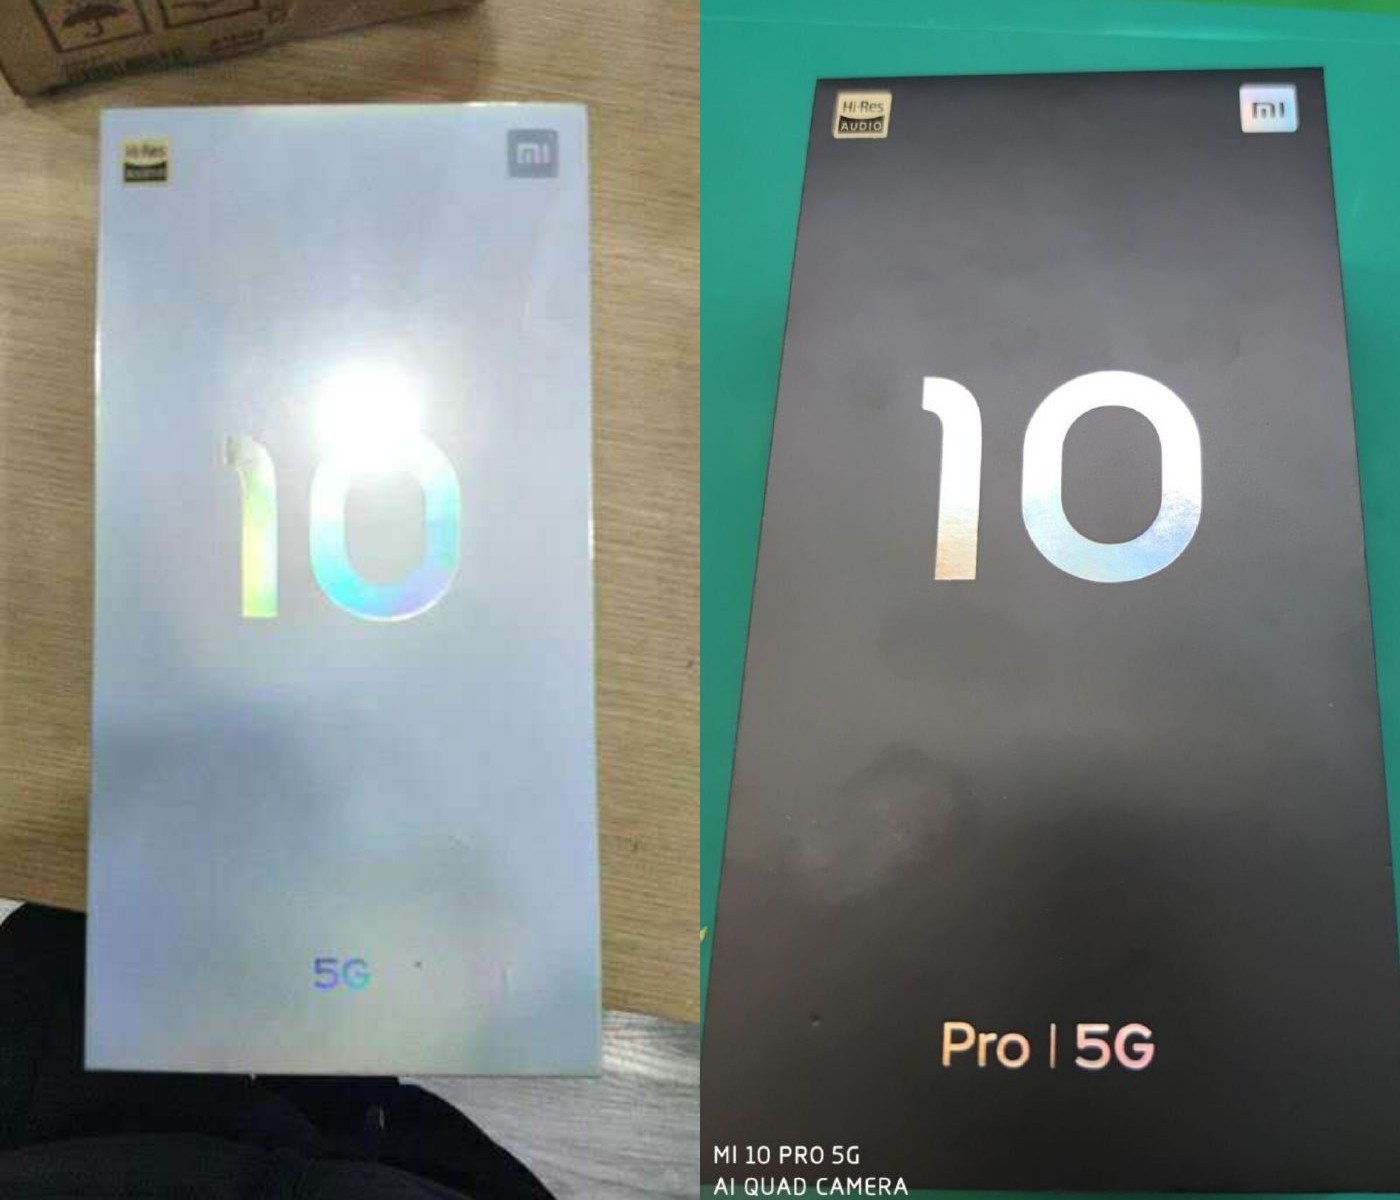 Bộ đôi Mi 10 và Mi 10
Pro của Xiaomi lộ diện toàn bộ thông số cấu hình và giá bán